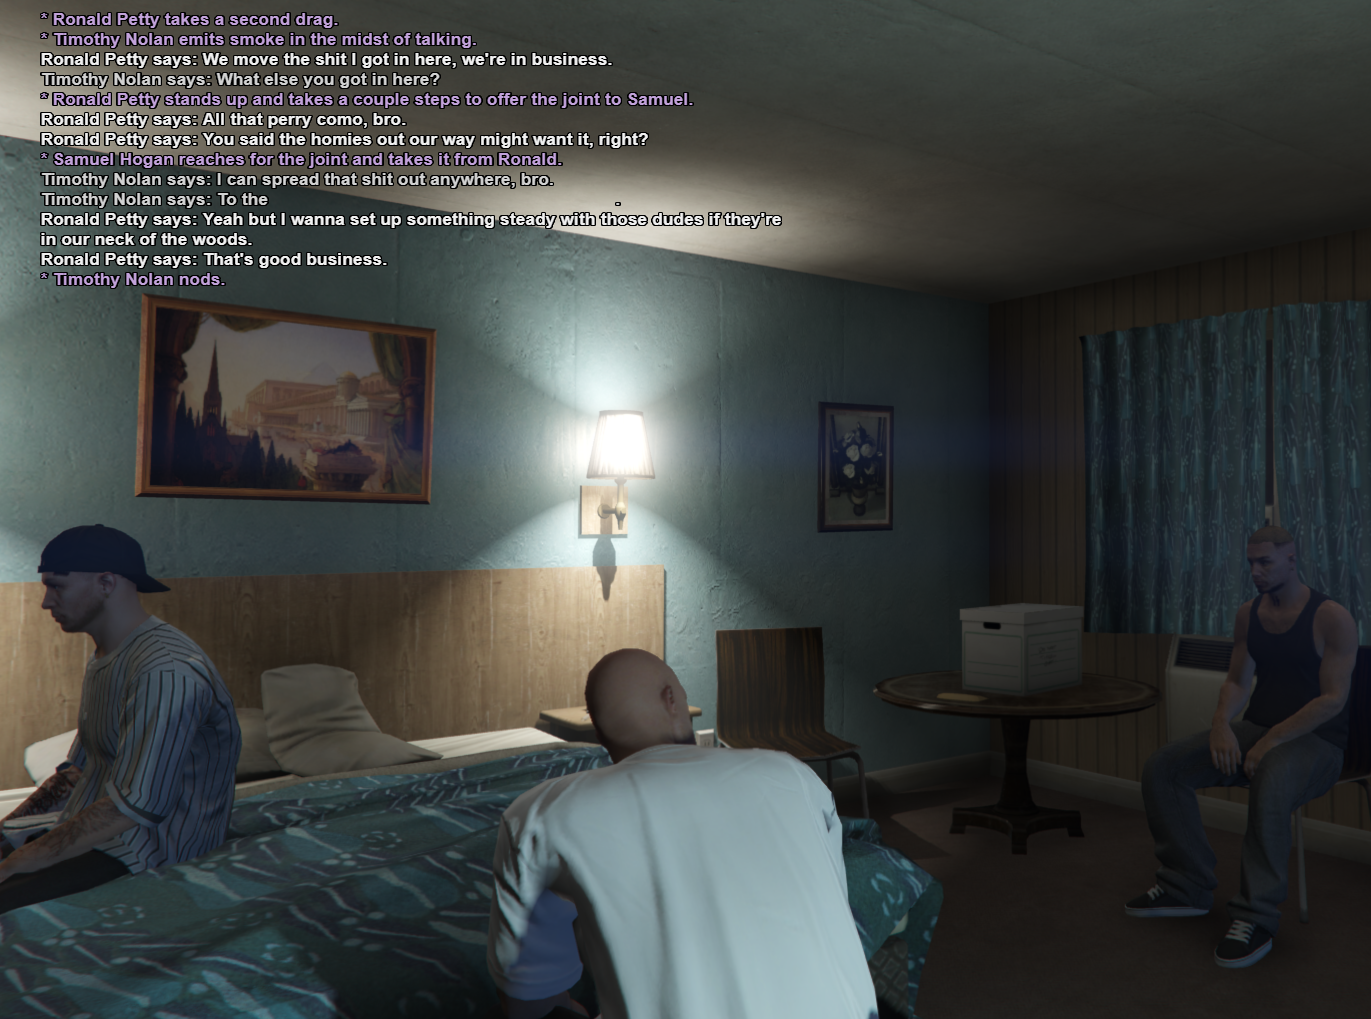 Grand_Theft_Auto_V_Screenshot_2020.01.10_-_14.42.42_copy.png